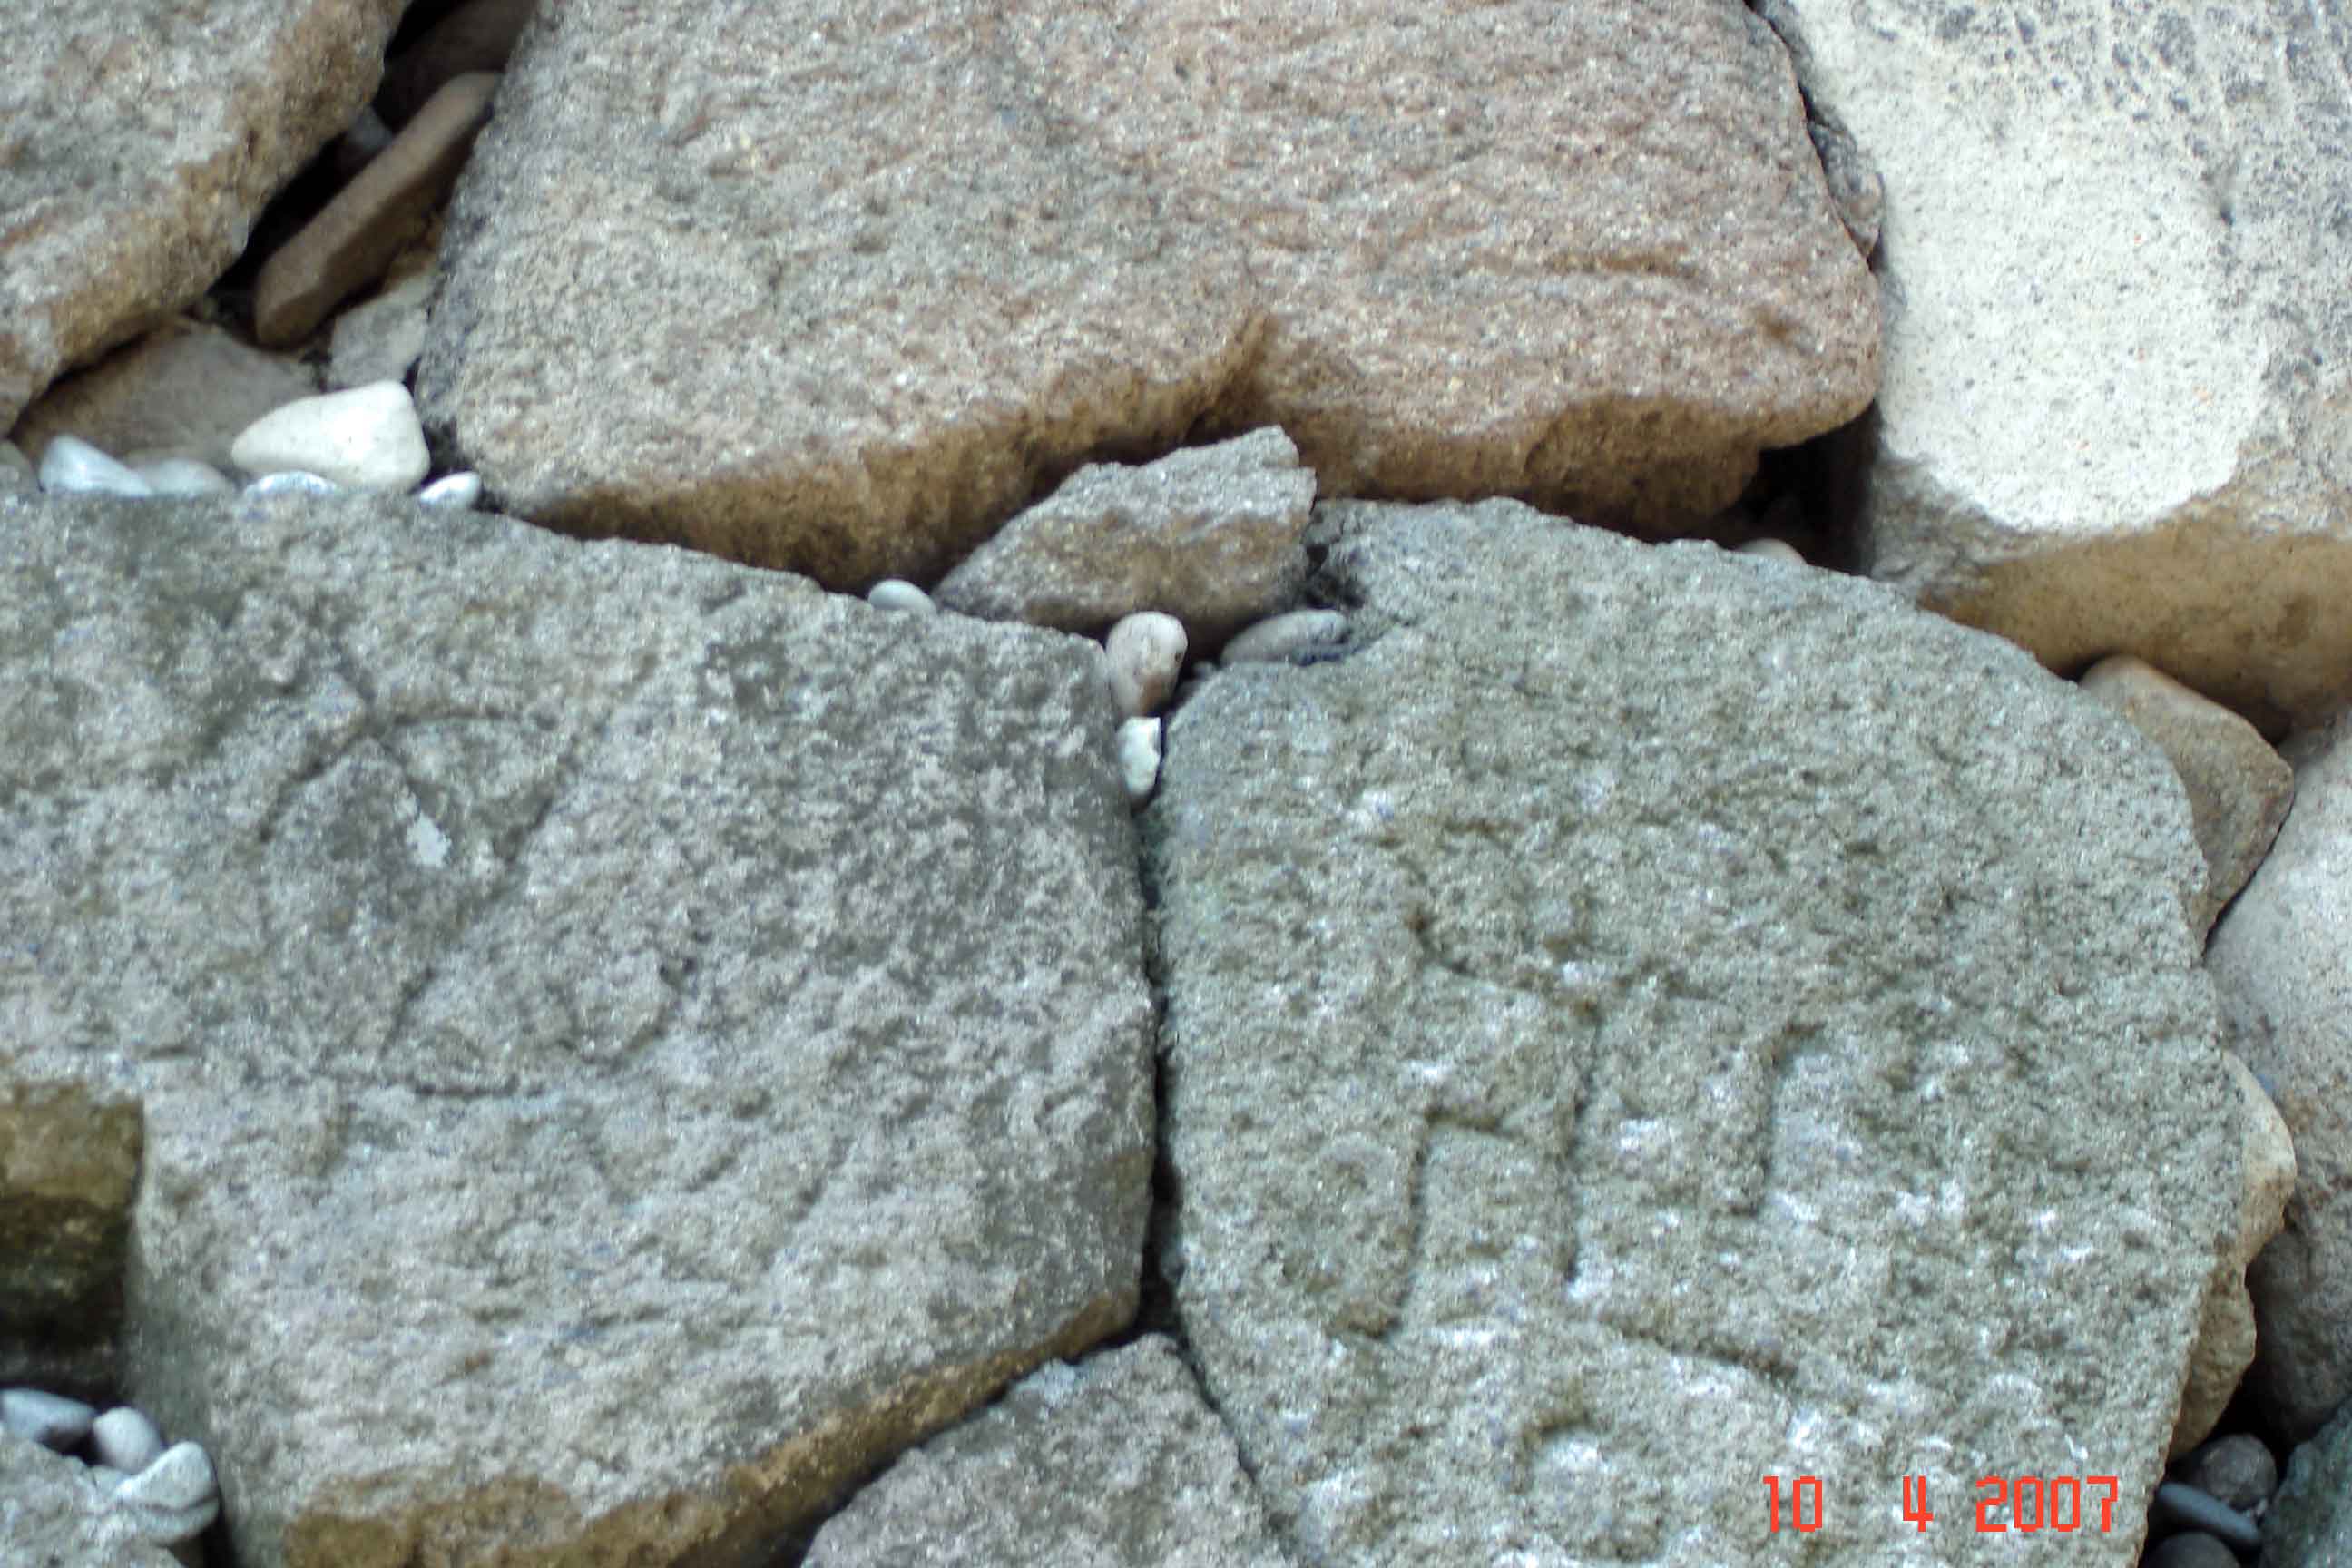 Kanazawa Castle Wall - Identifying marks of stone suppliers 